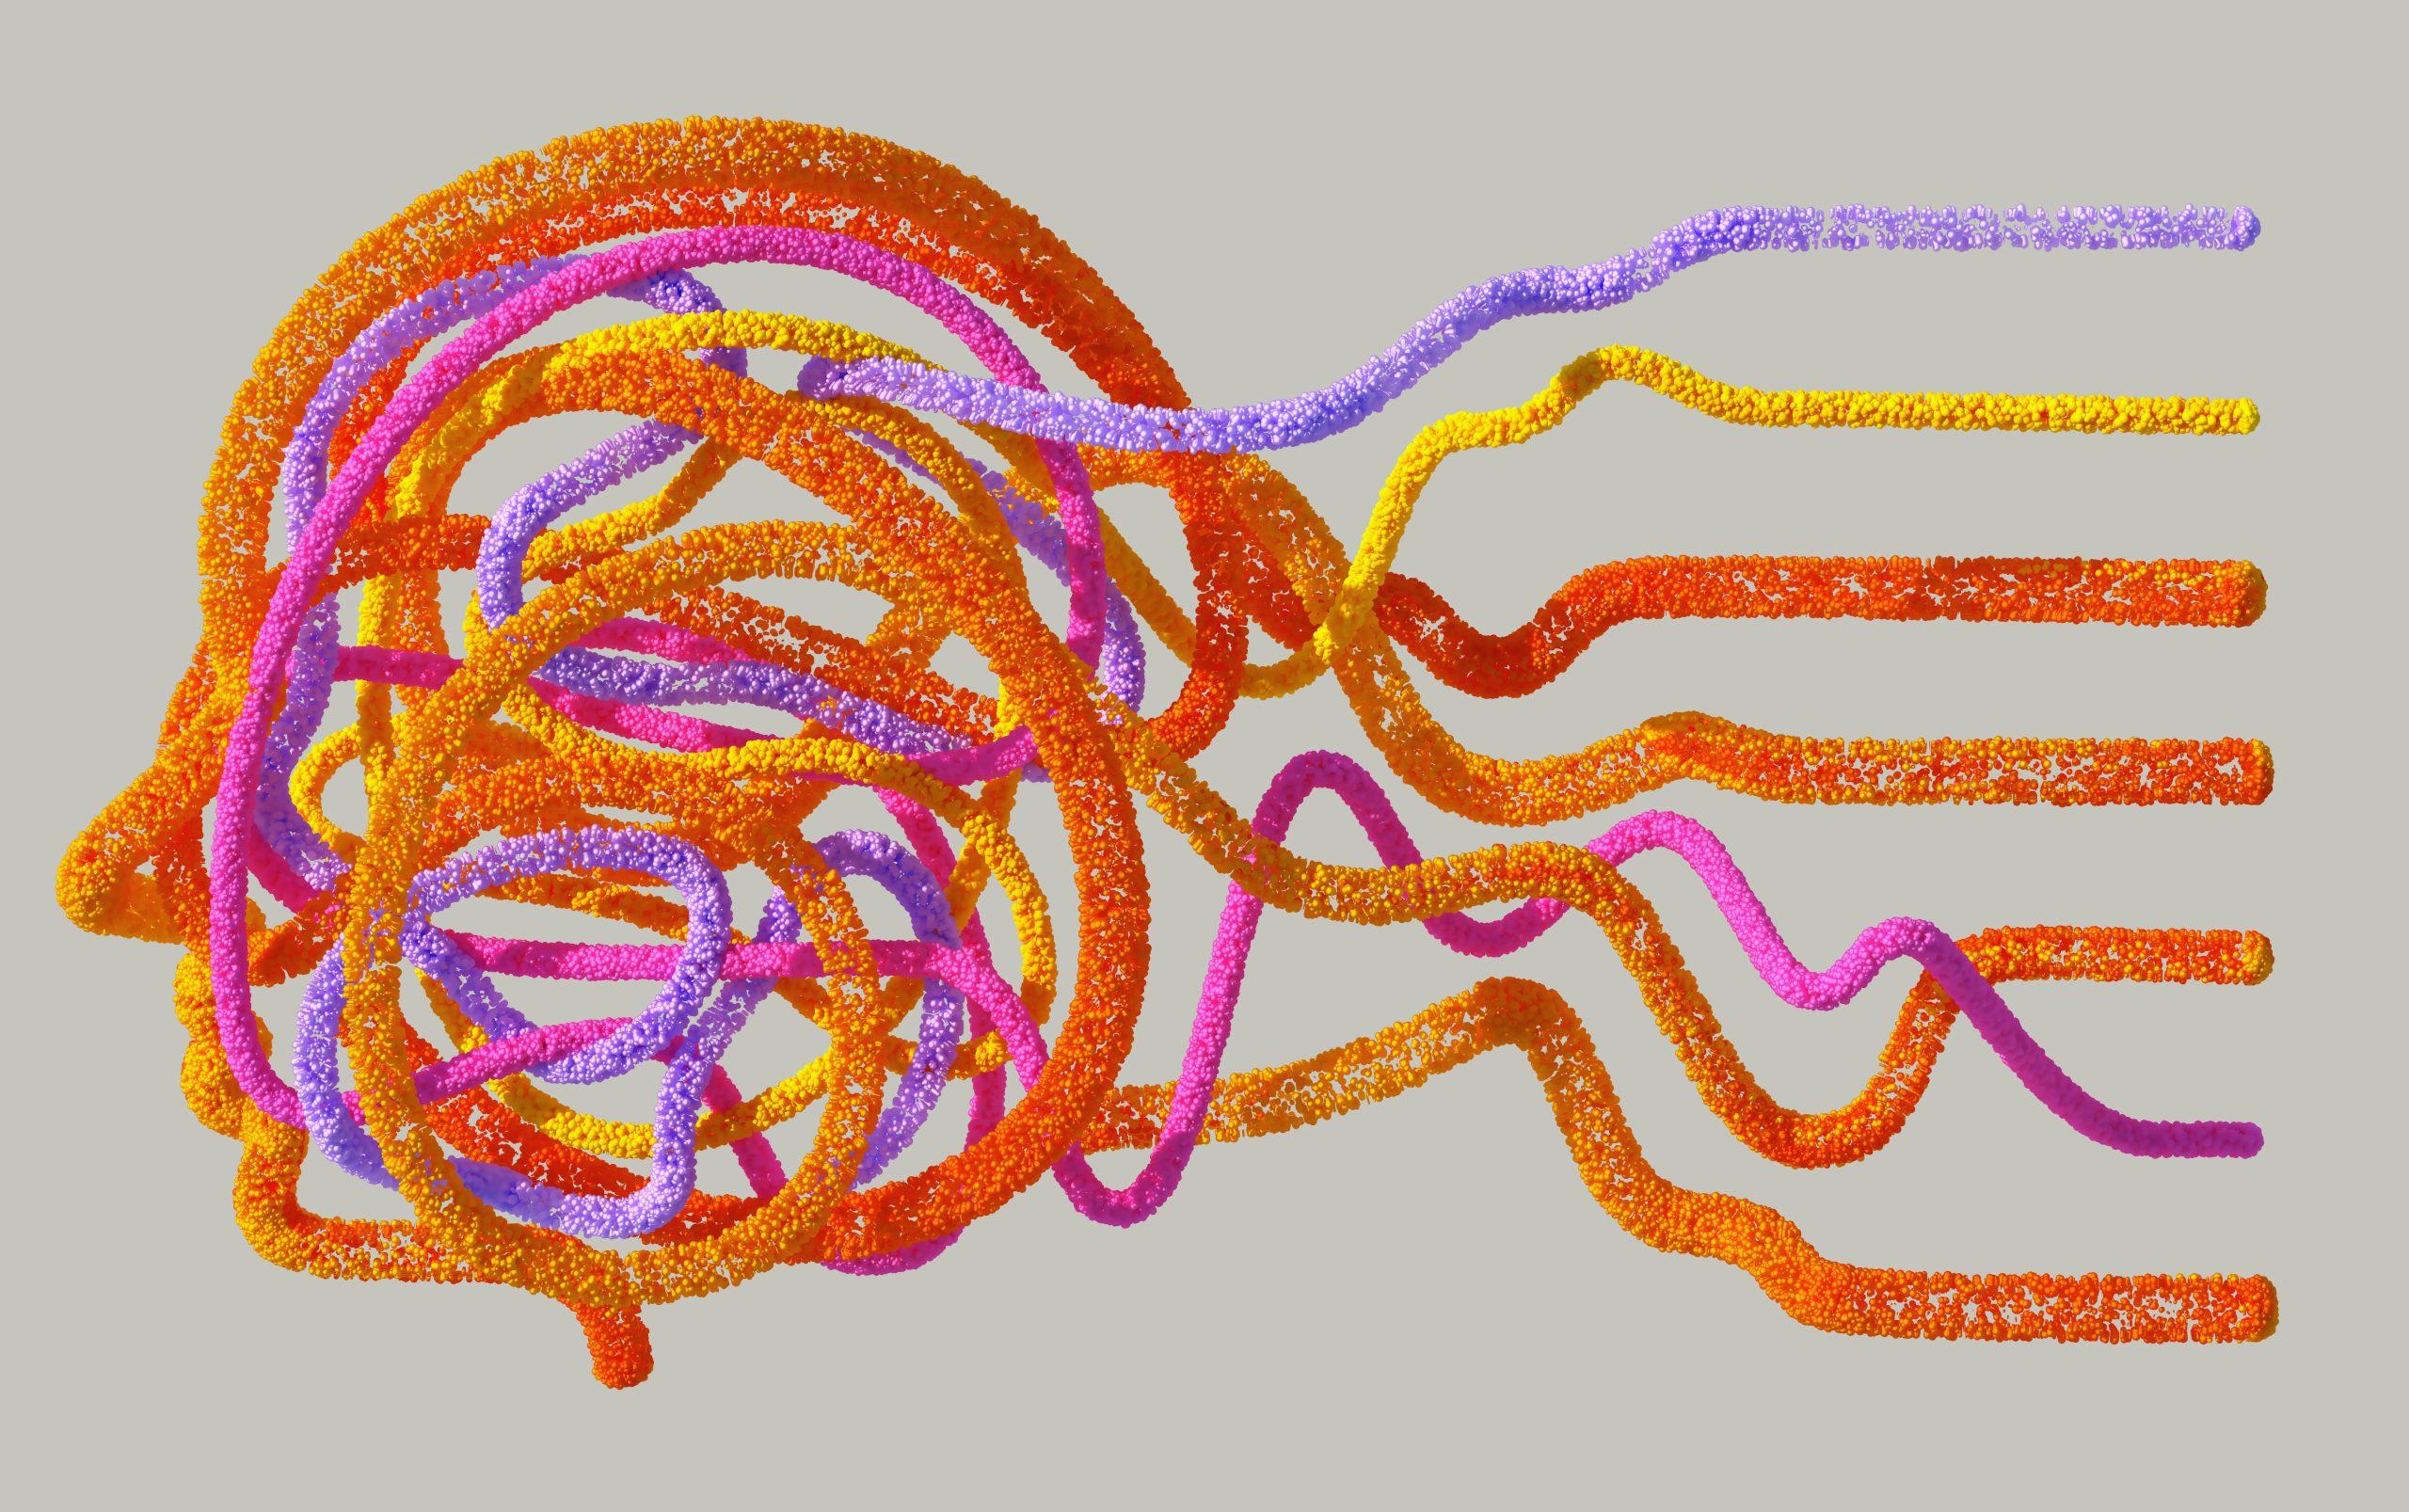 Ilustração de uma cabeça formada por diferentes correntes coloridas constituídas por milhares de pequenas bolhas.